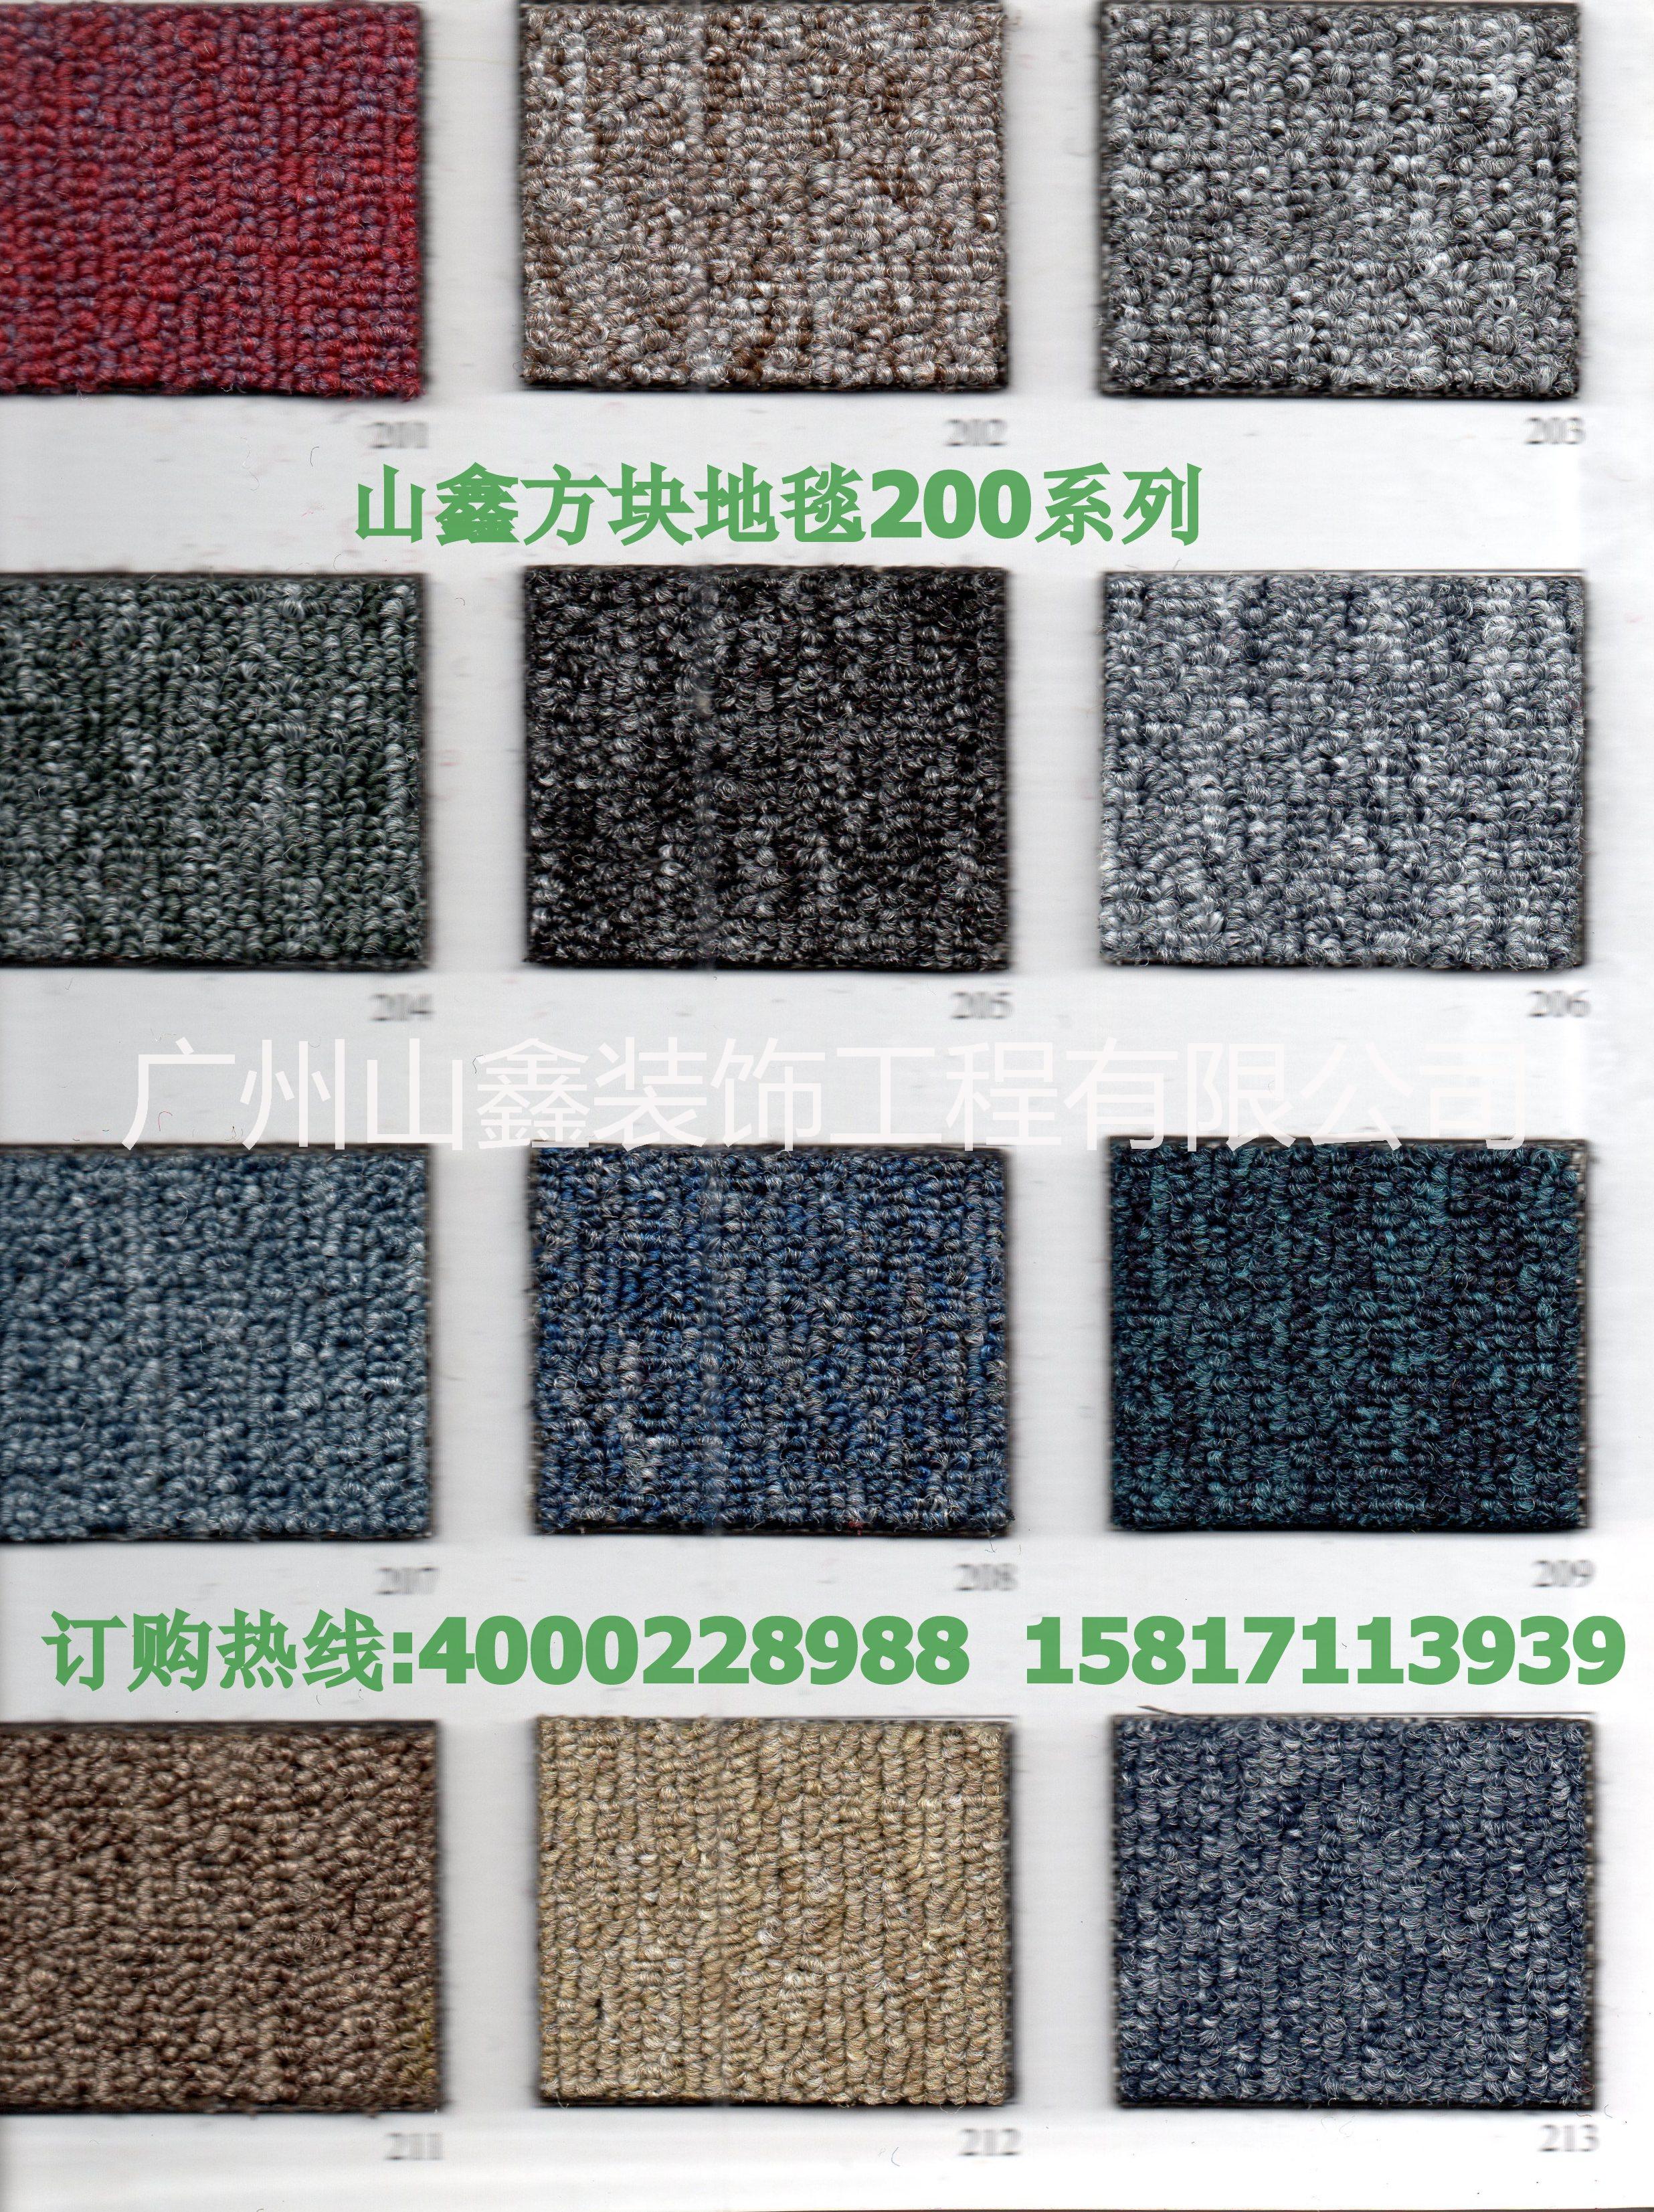 广州市广州方块地毯厂价大促销26元厂家